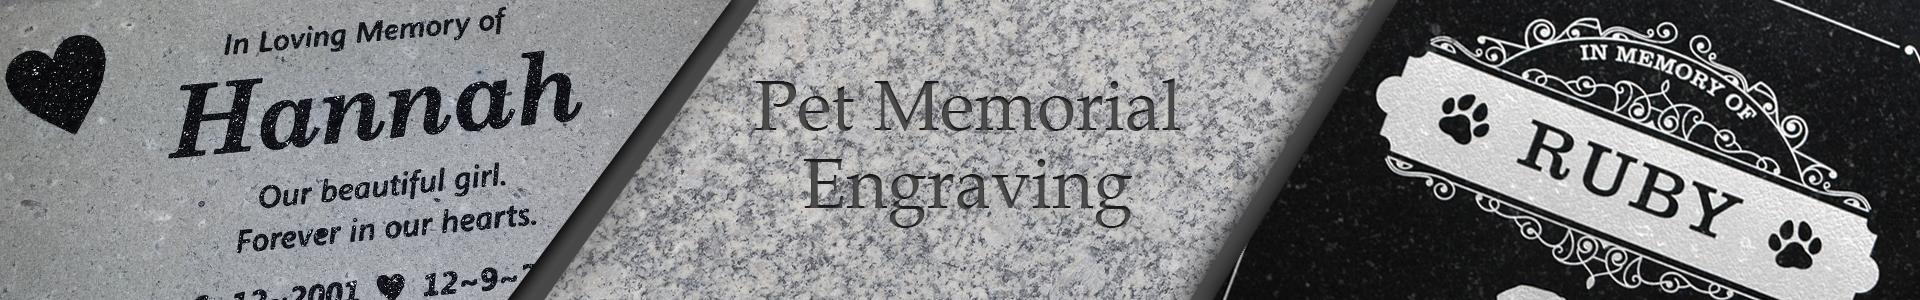 pet-memorial-engraving.png